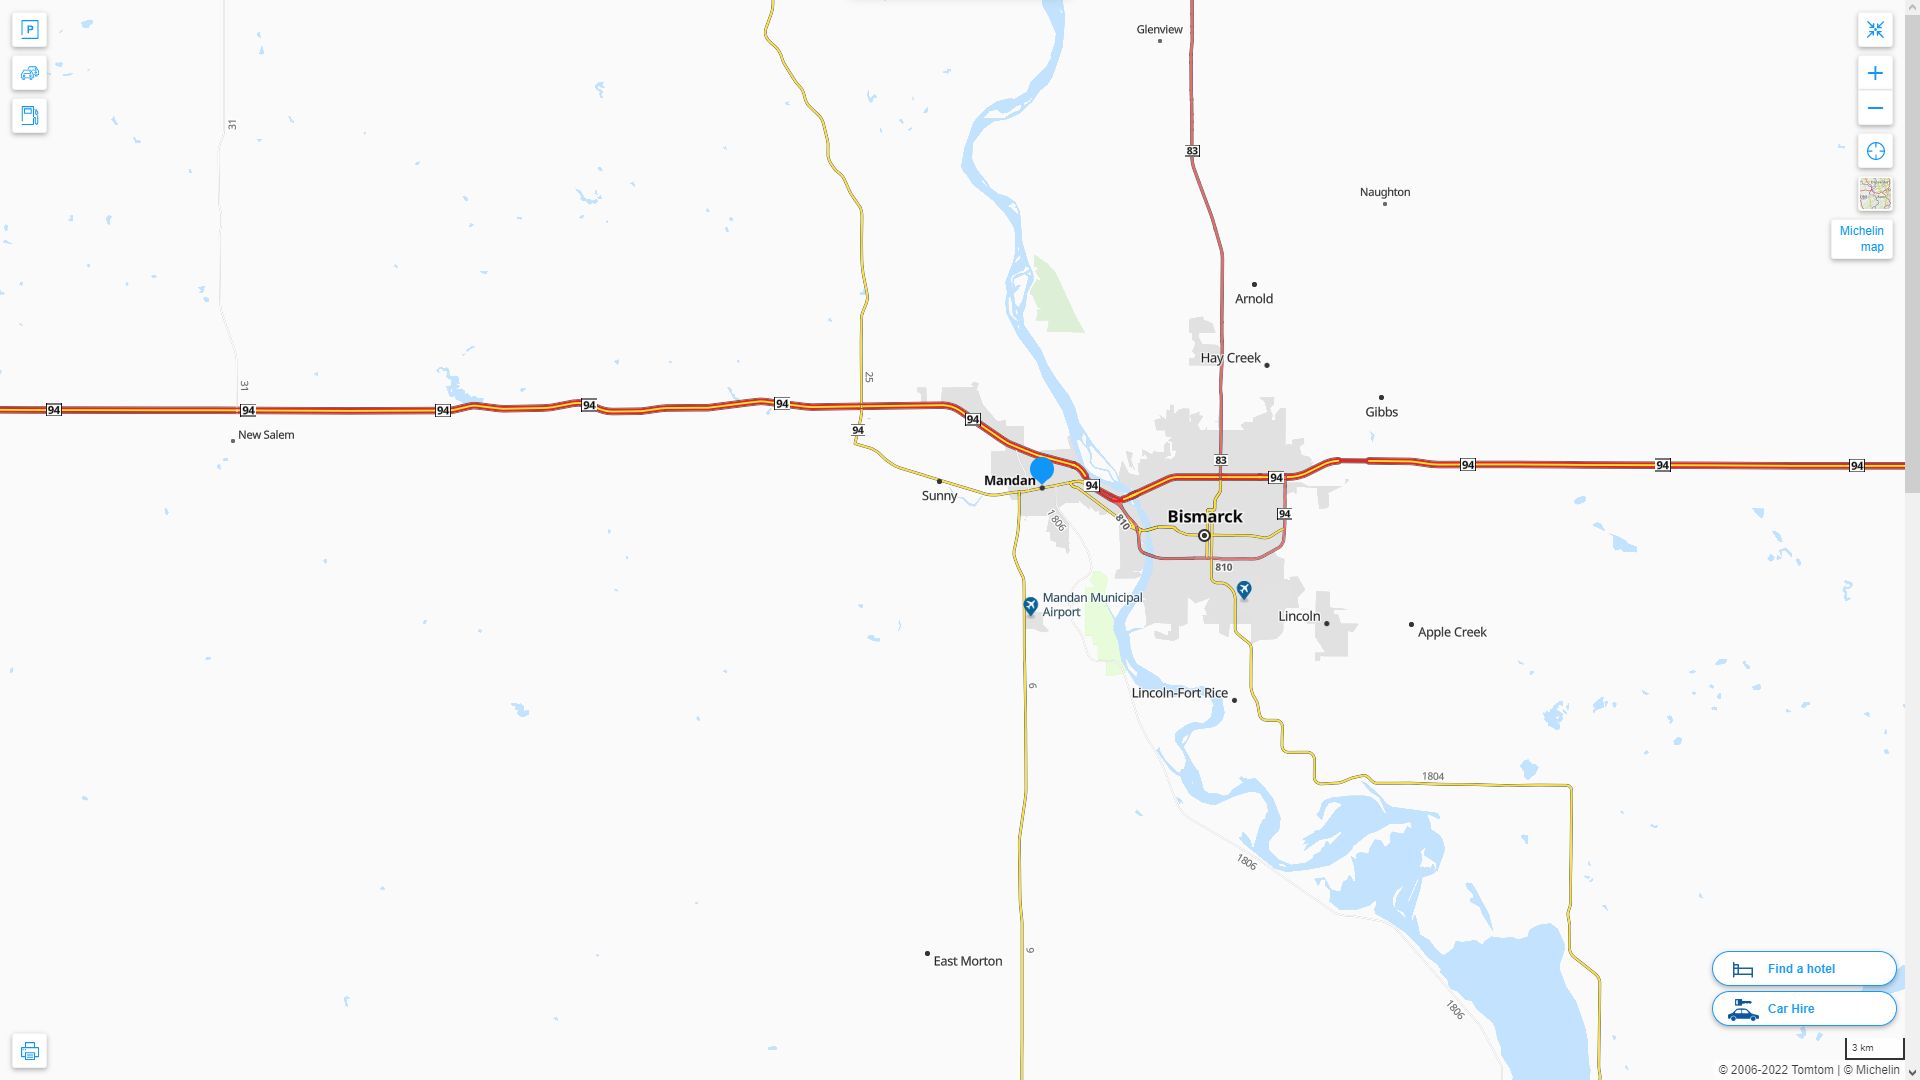 Mandan North Dakota Highway and Road Map